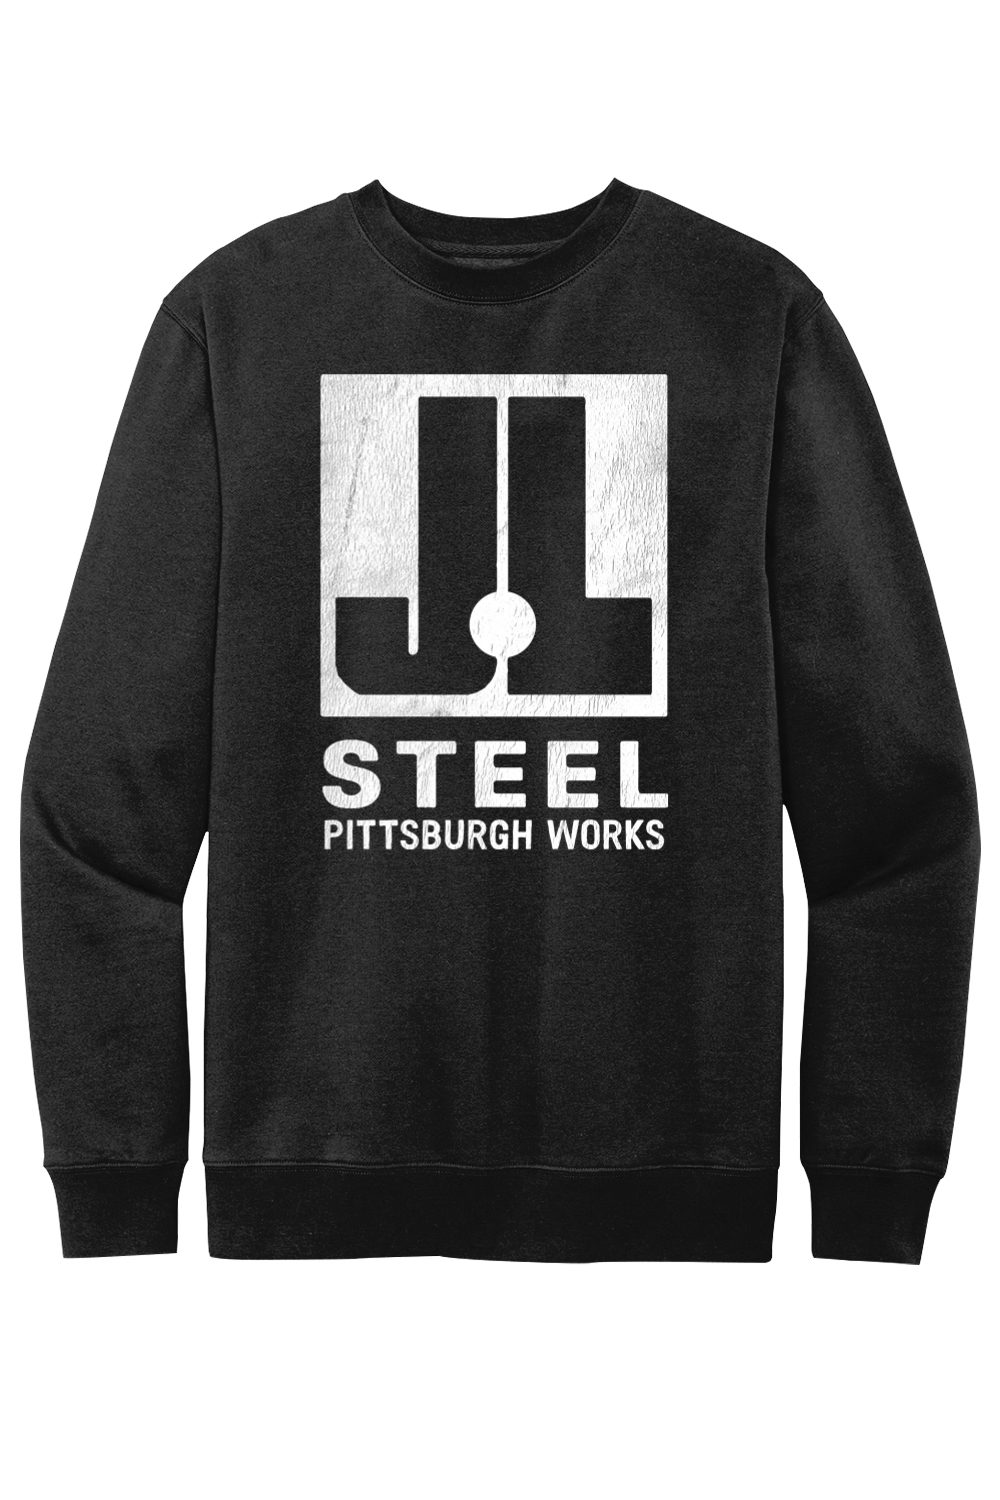 J&L Steel - Pittsburgh Works - Fleece Crew Sweatshirt - Yinzylvania